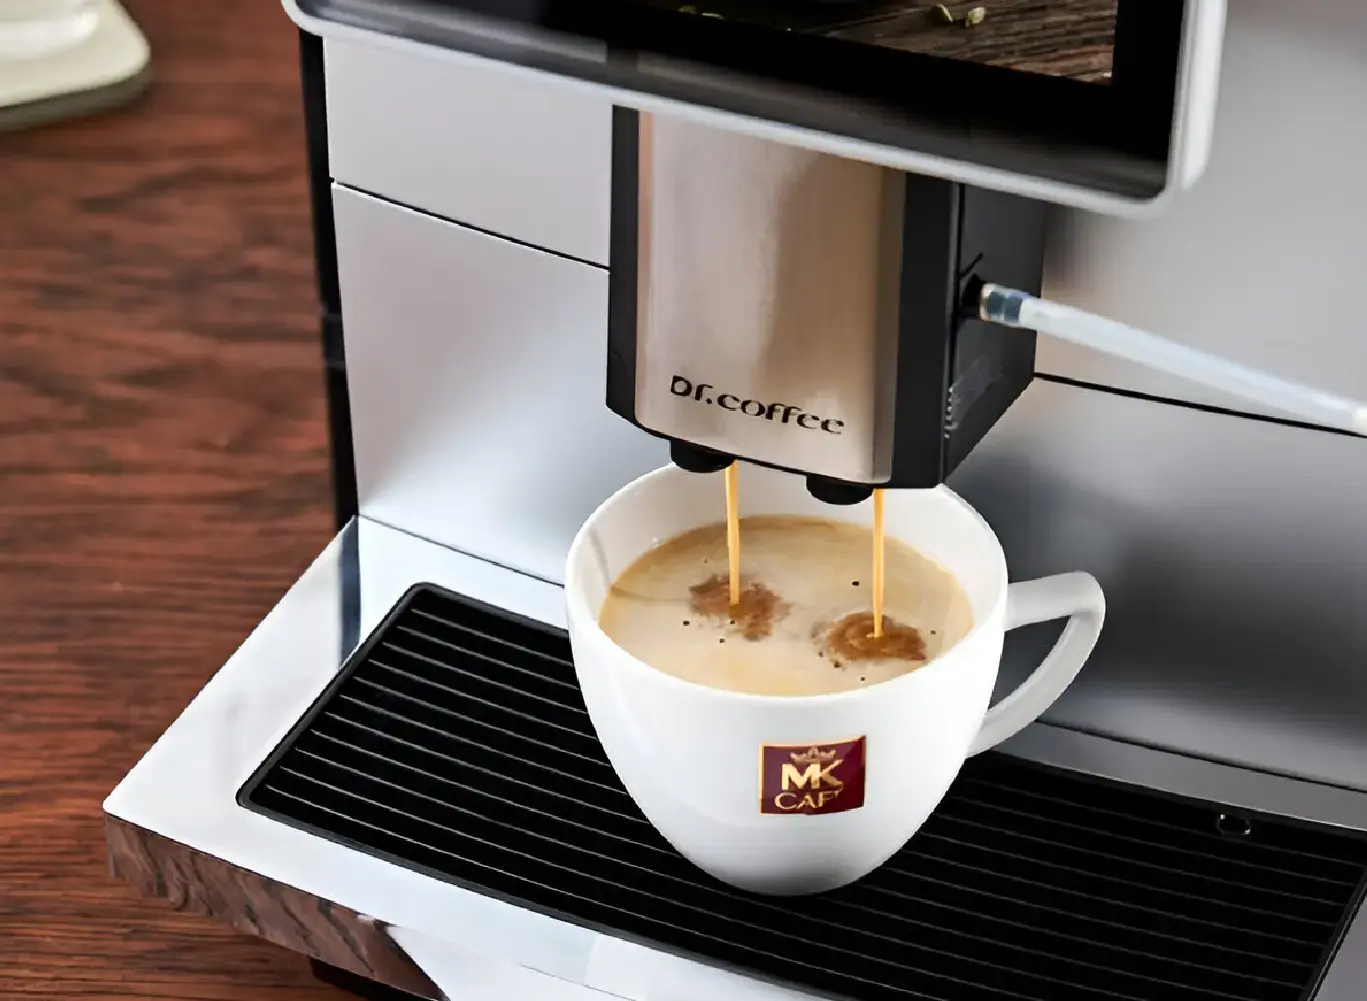 Cafetera para oficina: ¿Comprar o arrendar?